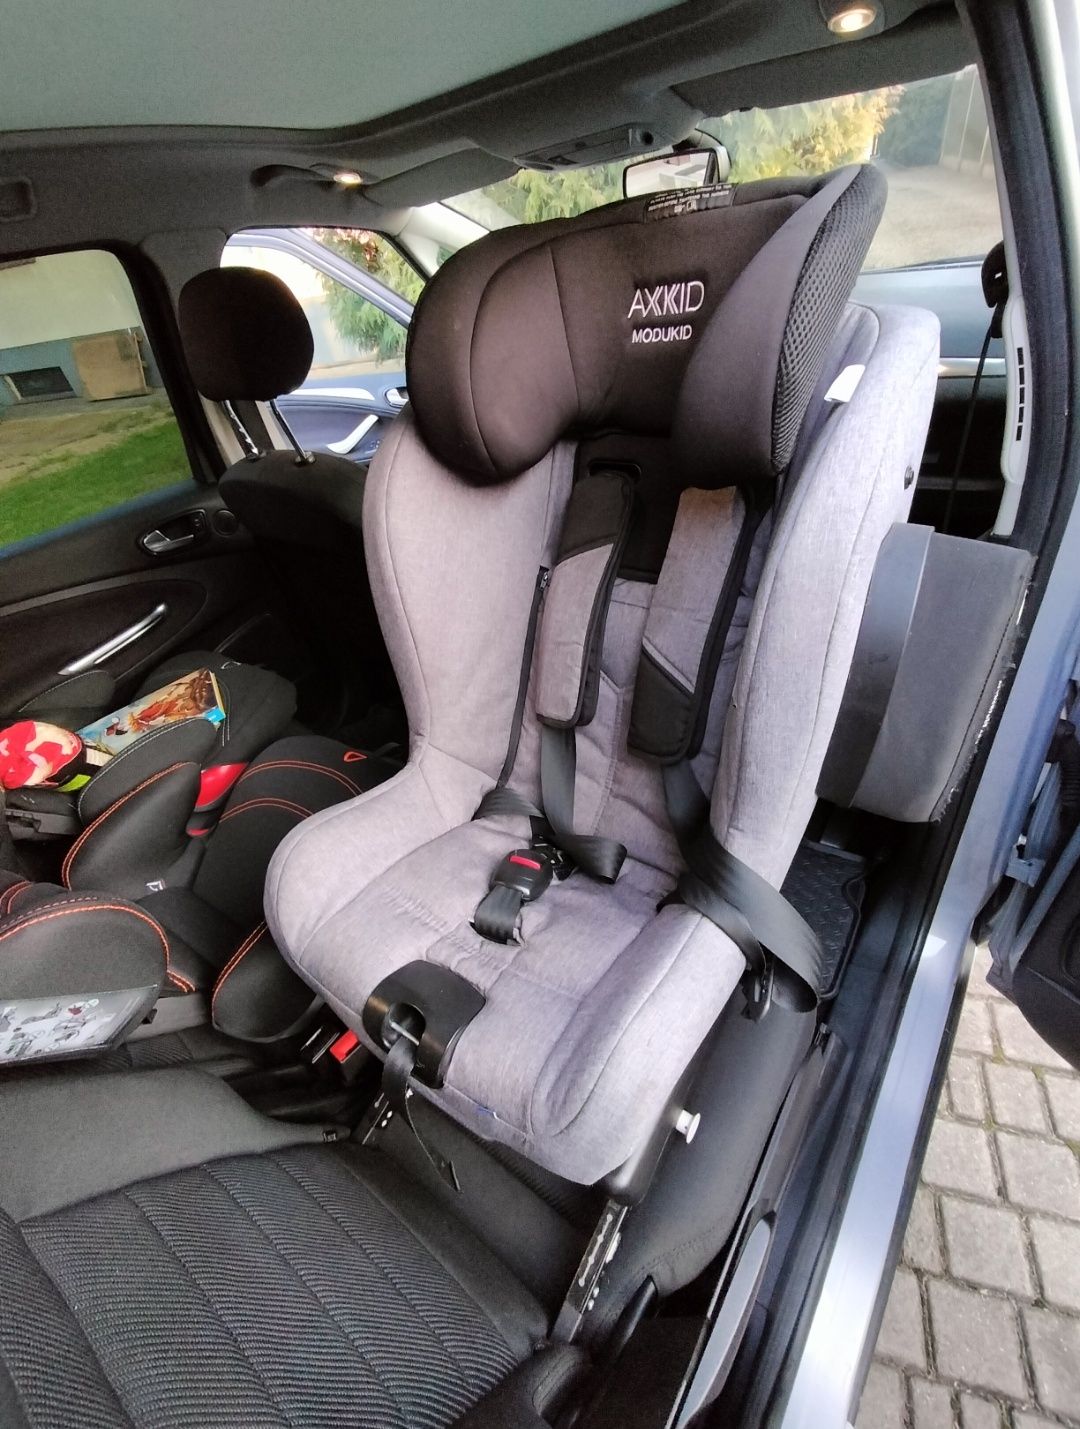 Fotelik samochodowy Axkid Modukid Seat Isofix 0-18kg